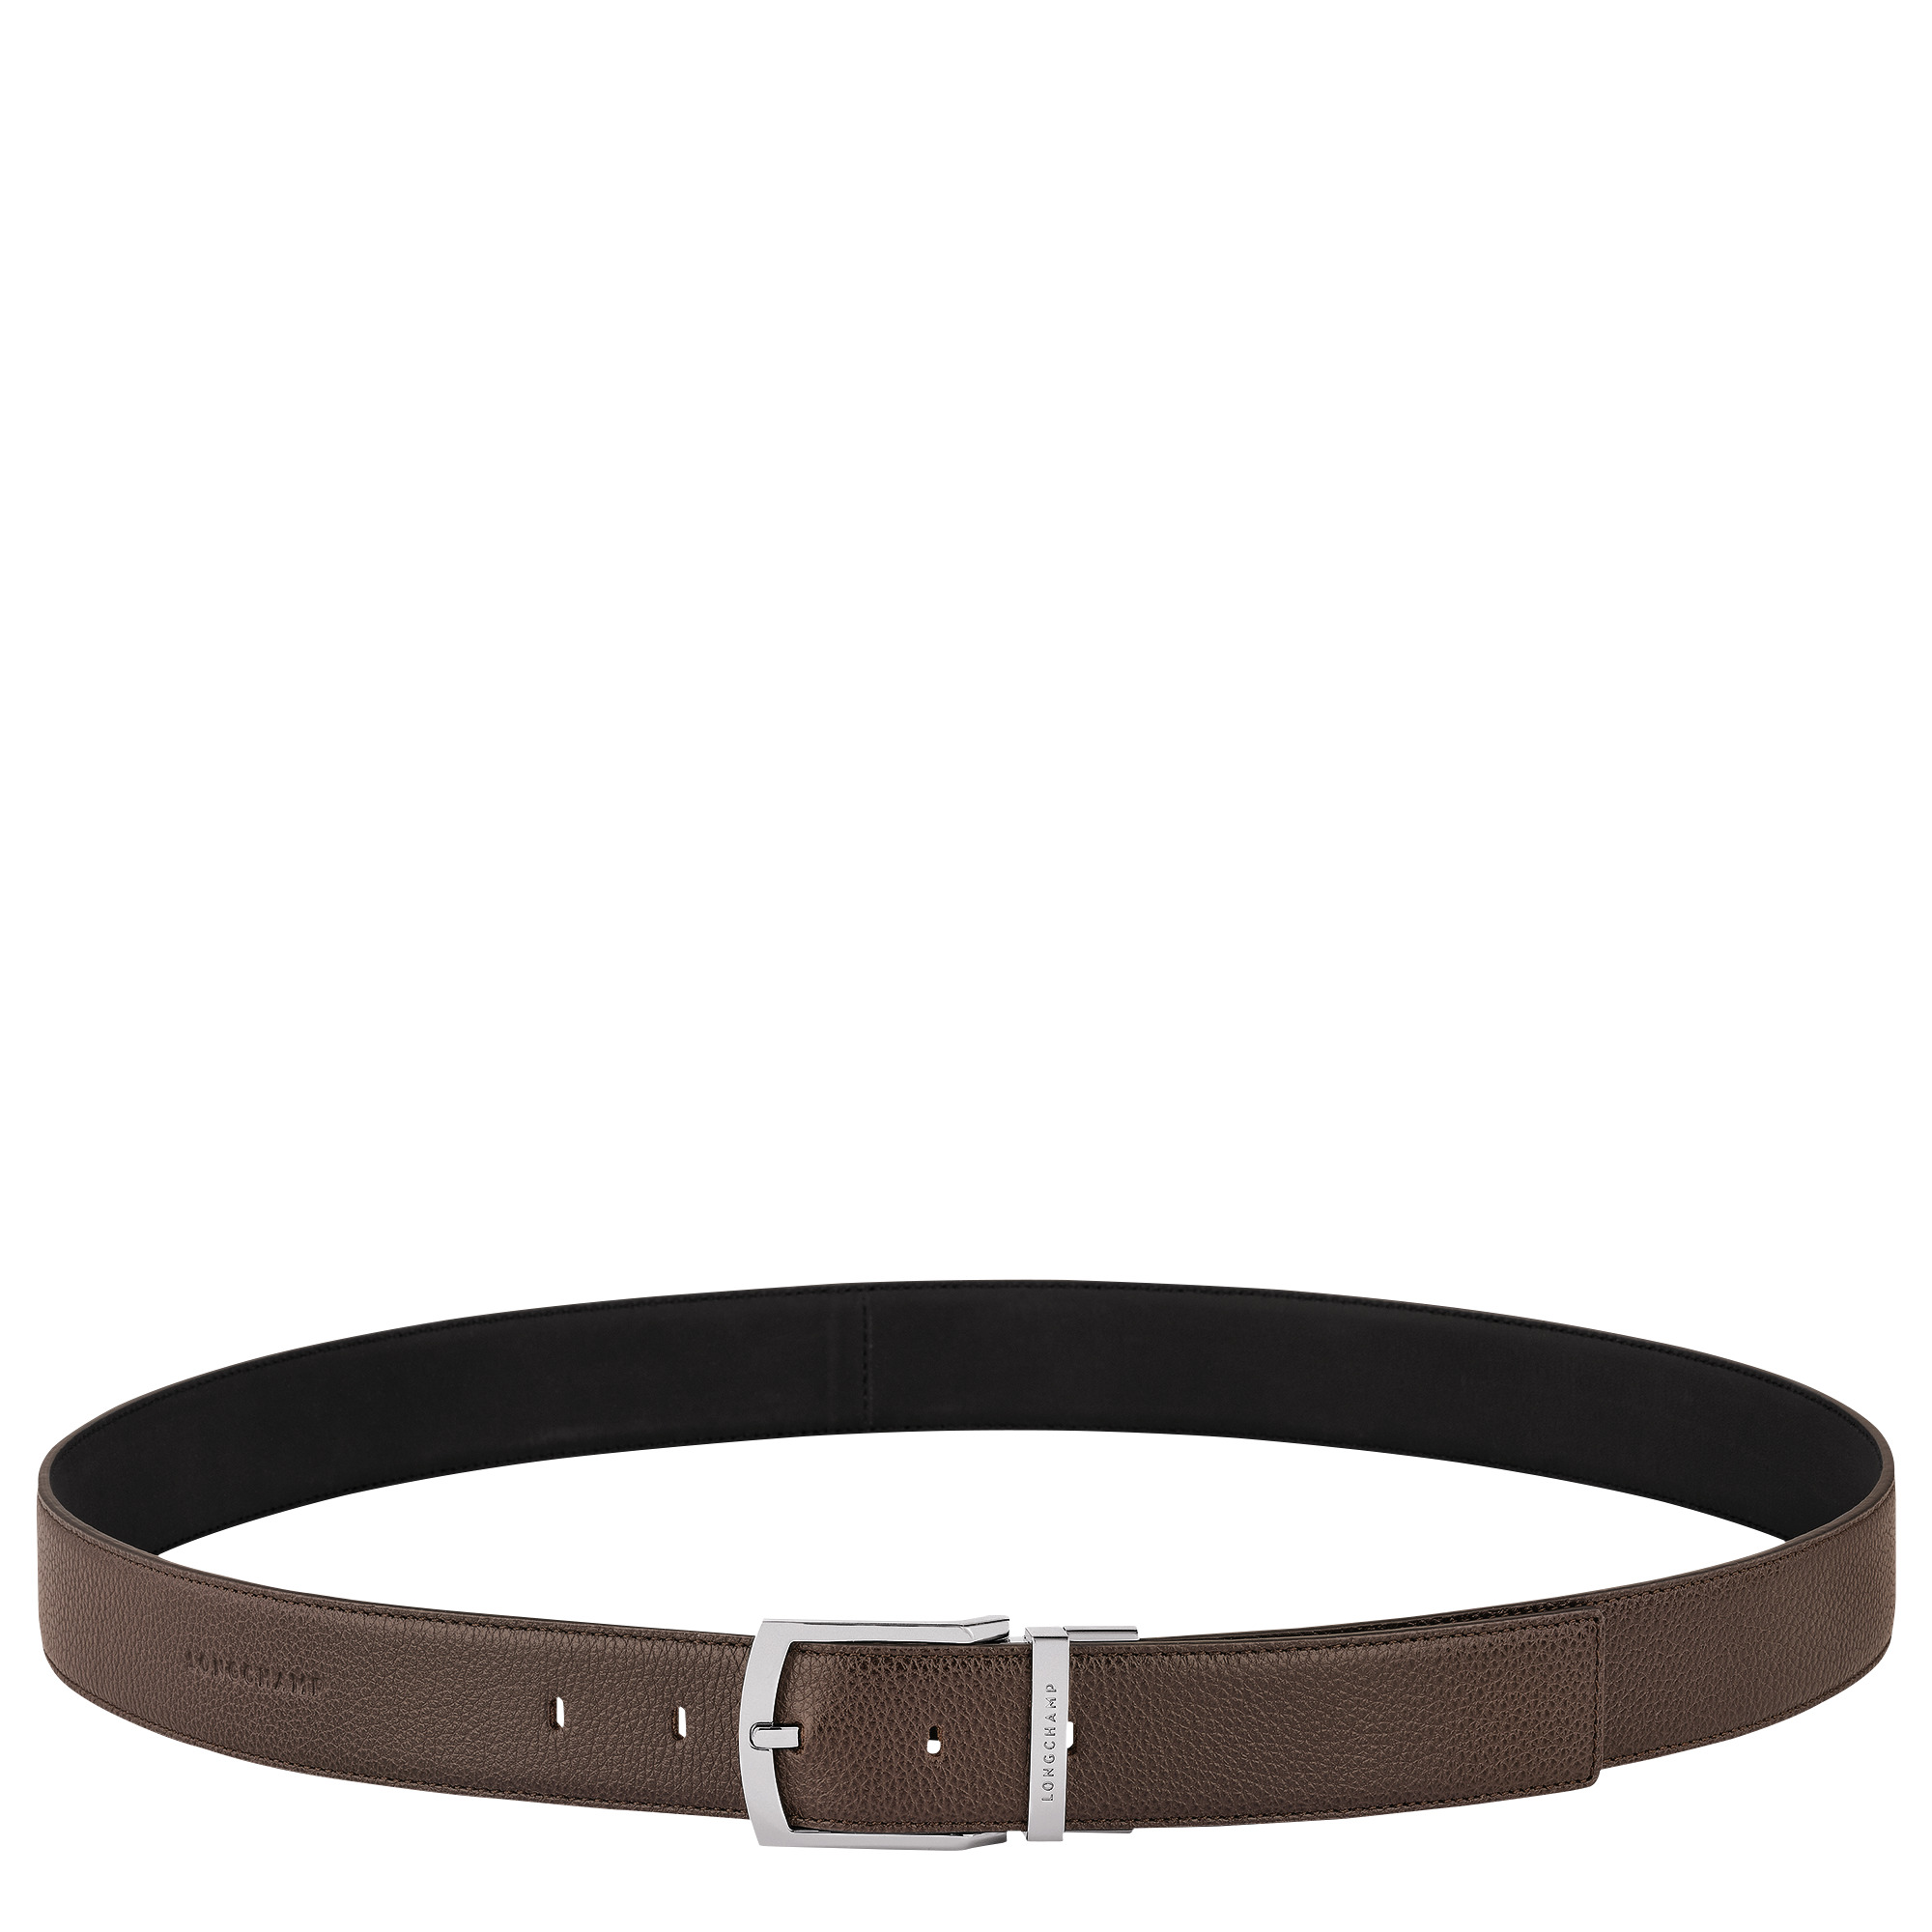 Le Foulonné Men's belt Mocha/Black - Leather - 1